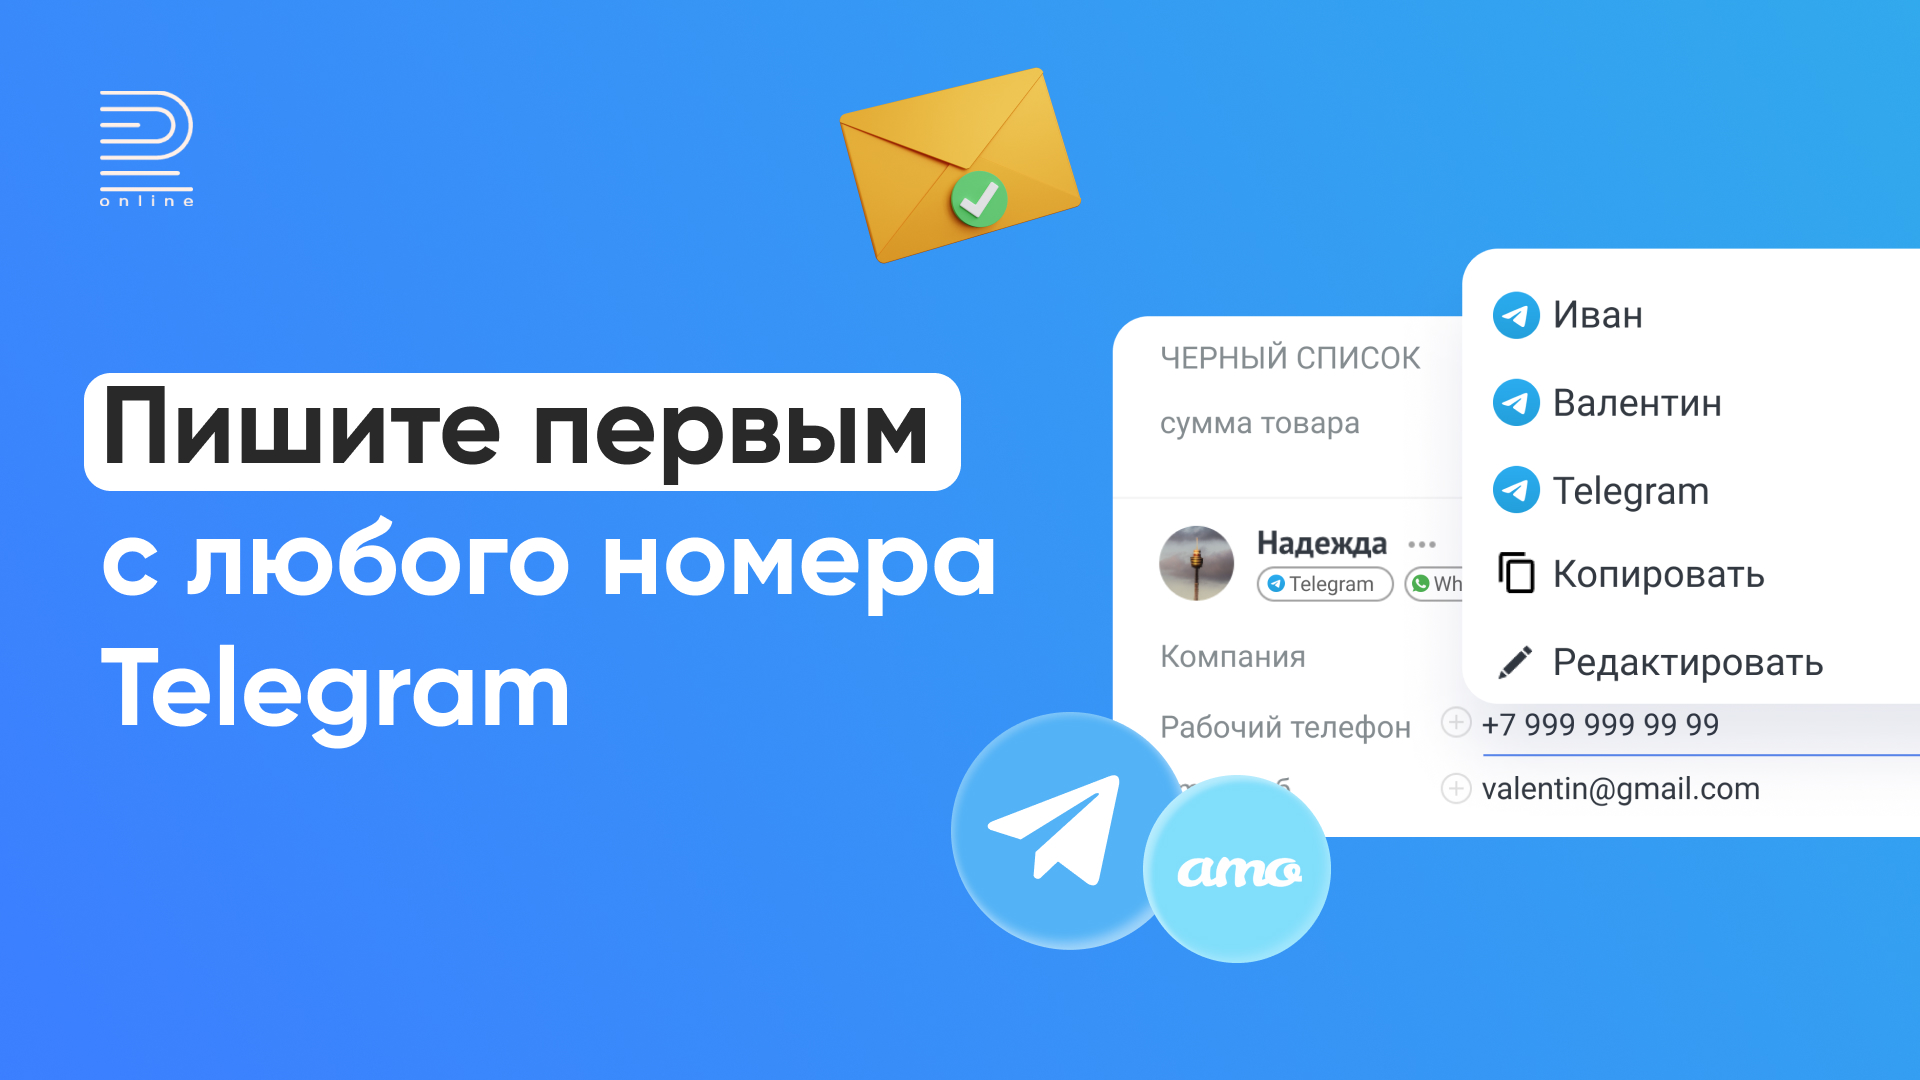 Войти в телеграмм по номеру телефона бесплатно без регистрации онлайн на русском языке без пароля фото 54